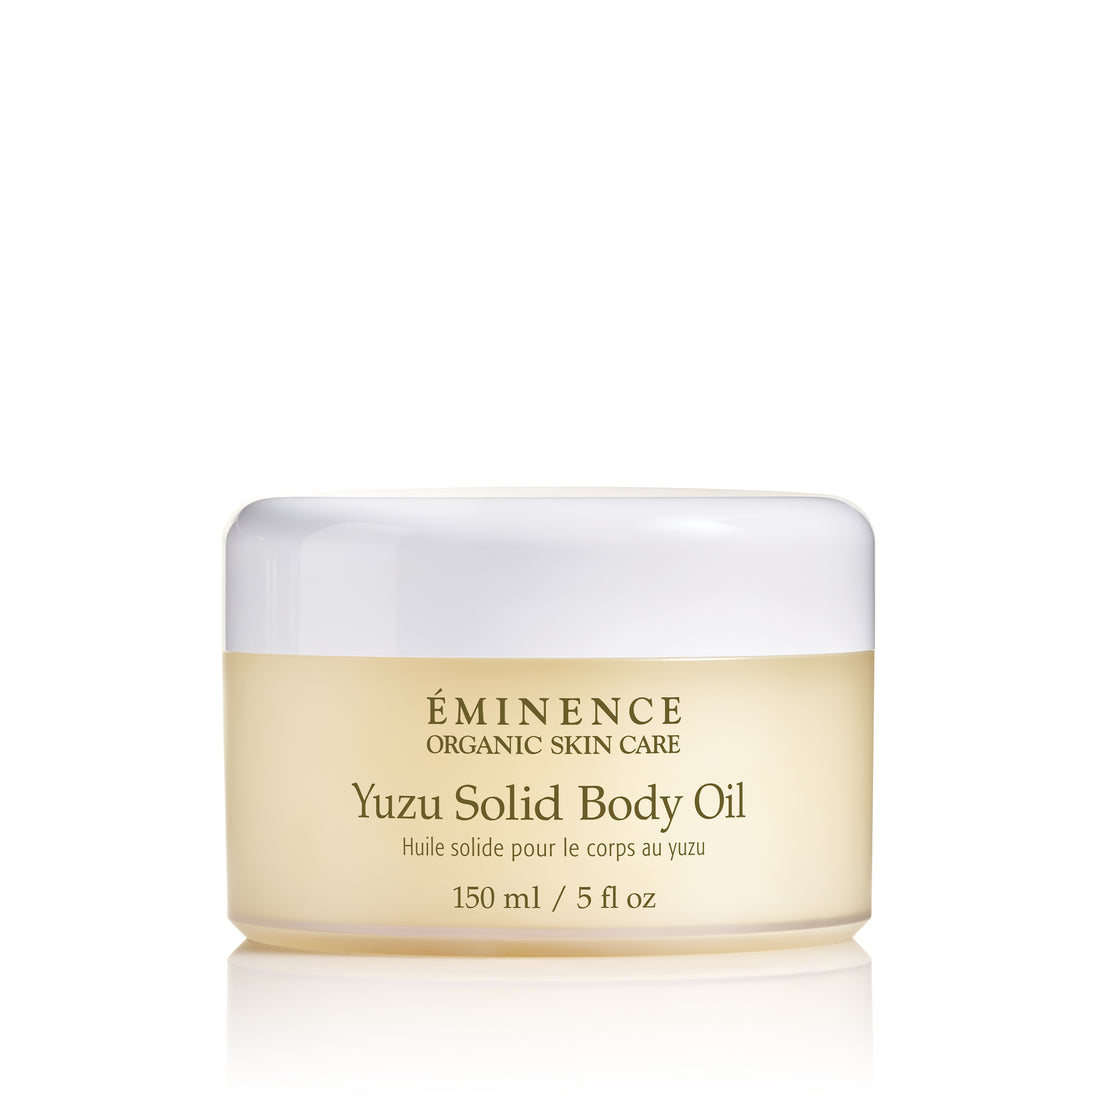 Yuzu Solid Body Oil | For supple, glowing skin